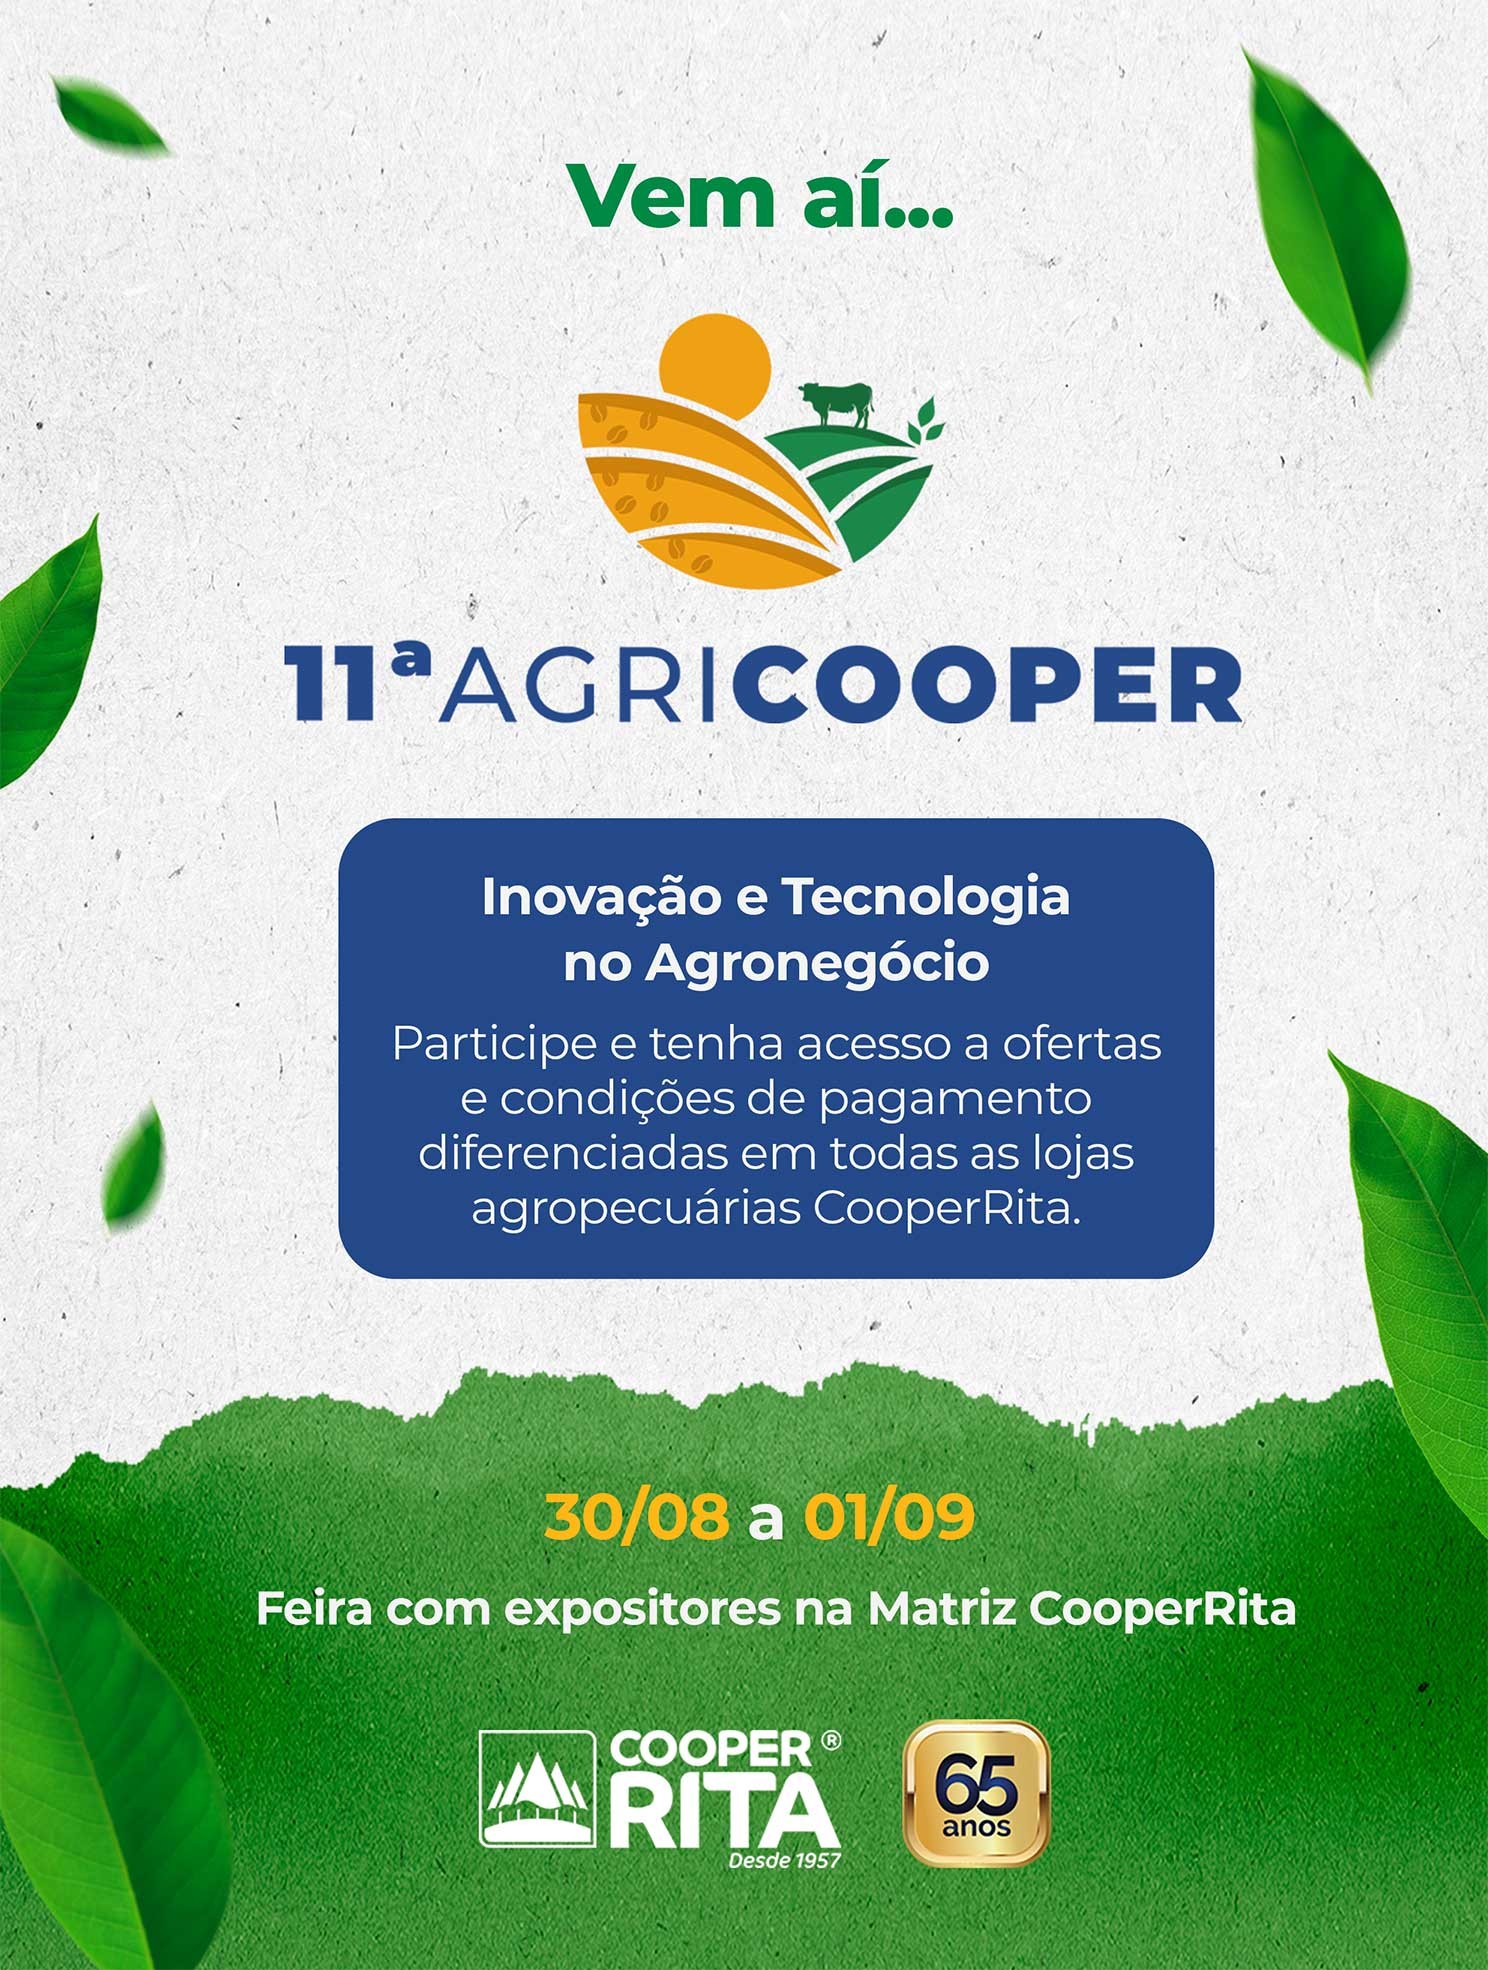 11ª Agricooper